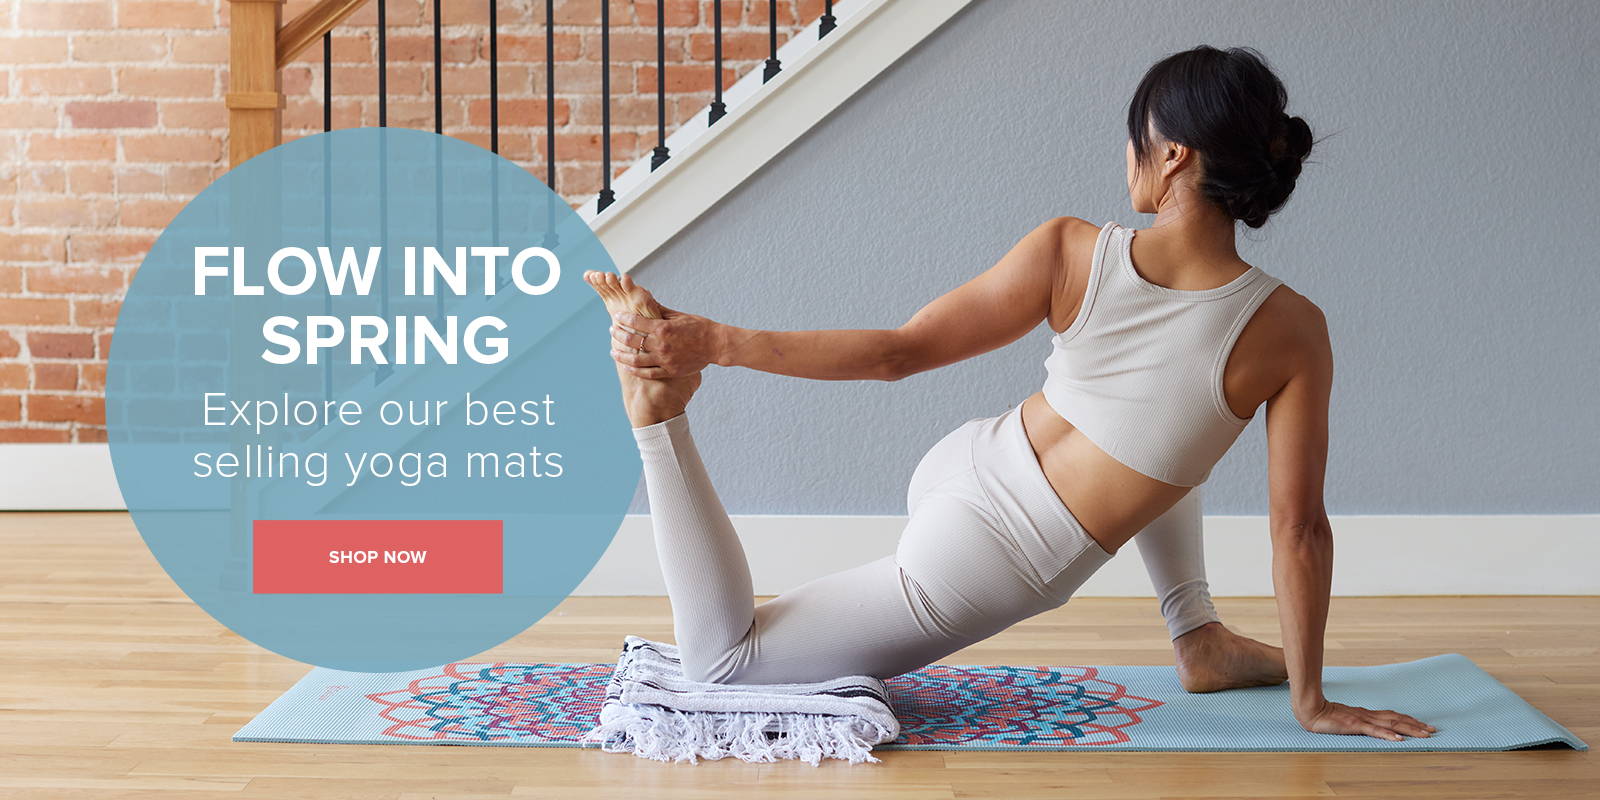 Yoga Towel Beauty Print Comfortable Workout Gym Fitness Meditation Protable Pad 